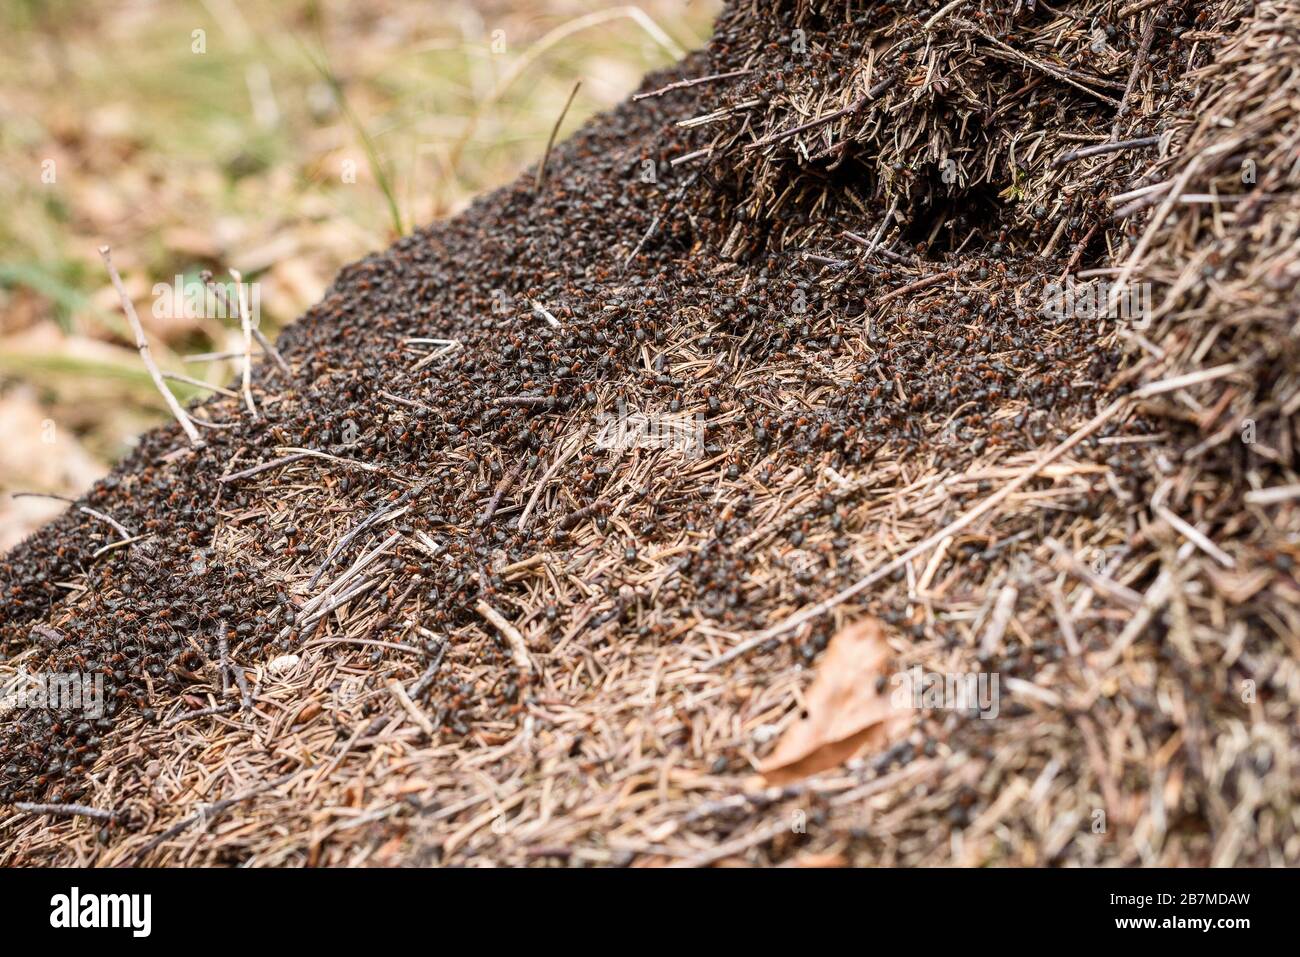 Große Milde mit Ameisenkolonie in Waldwäldern. Große Kolonie von roten und schwarzen Ameisen und riesigem Ameisennest aus Fichten oder Kiefern im Wald von Slowenien. Stockfoto